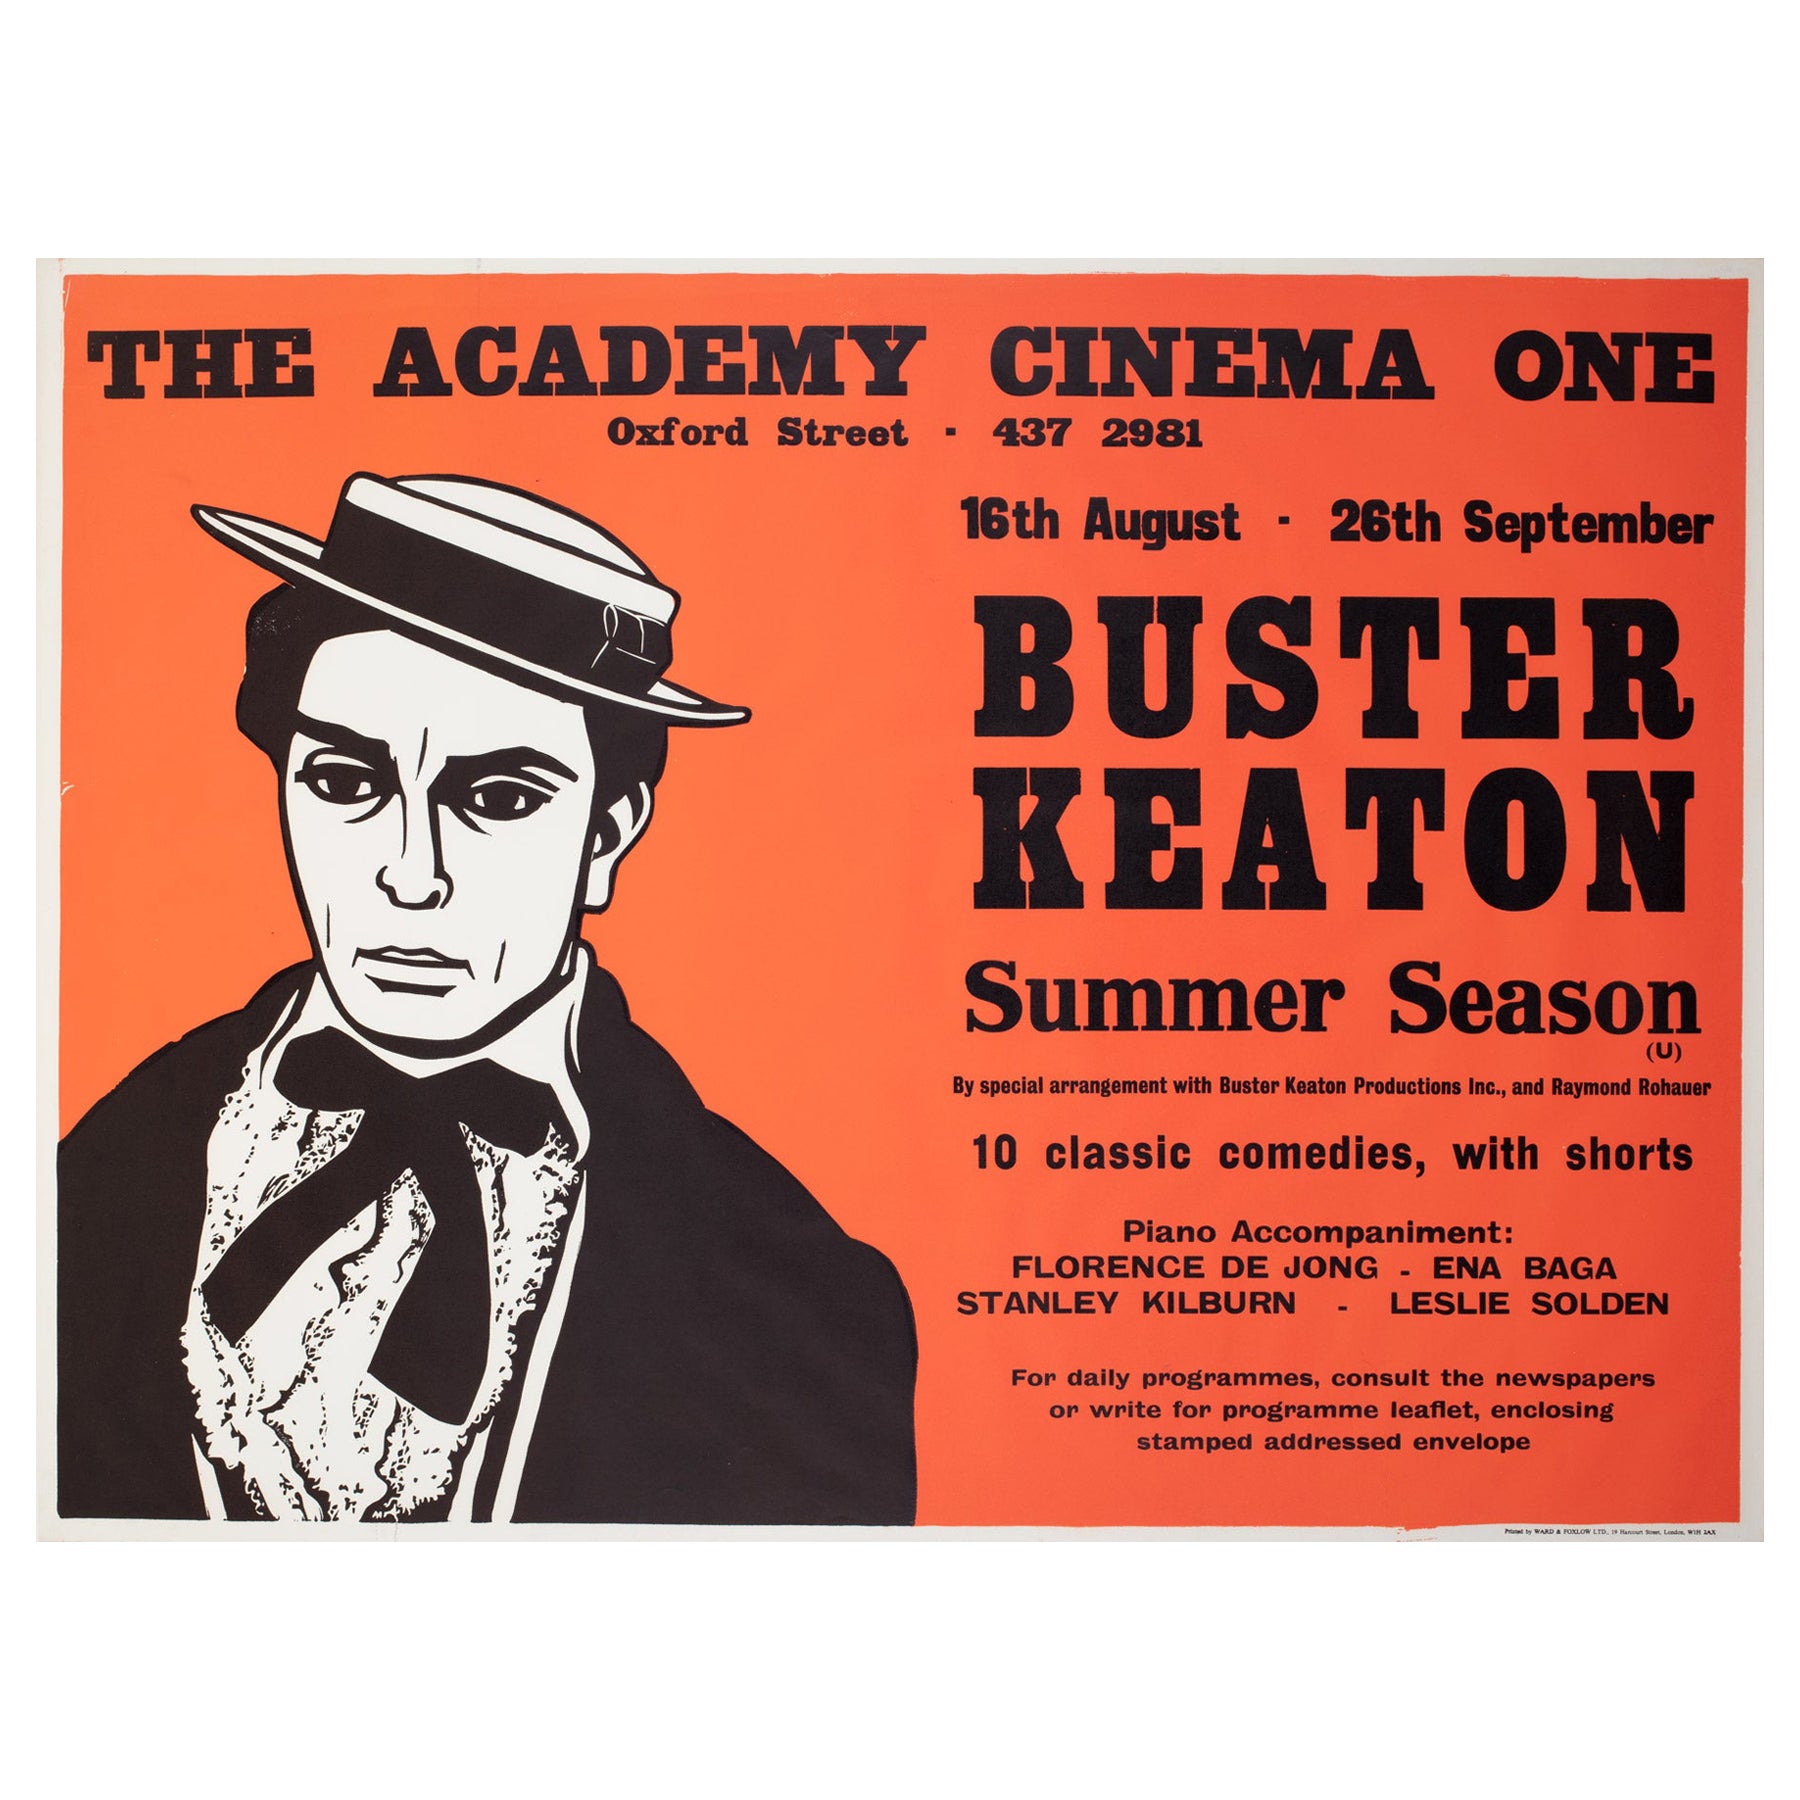 Buster Keaton Sommersaison 1970er London UK Quad Film Filmplakat, Strausfeld